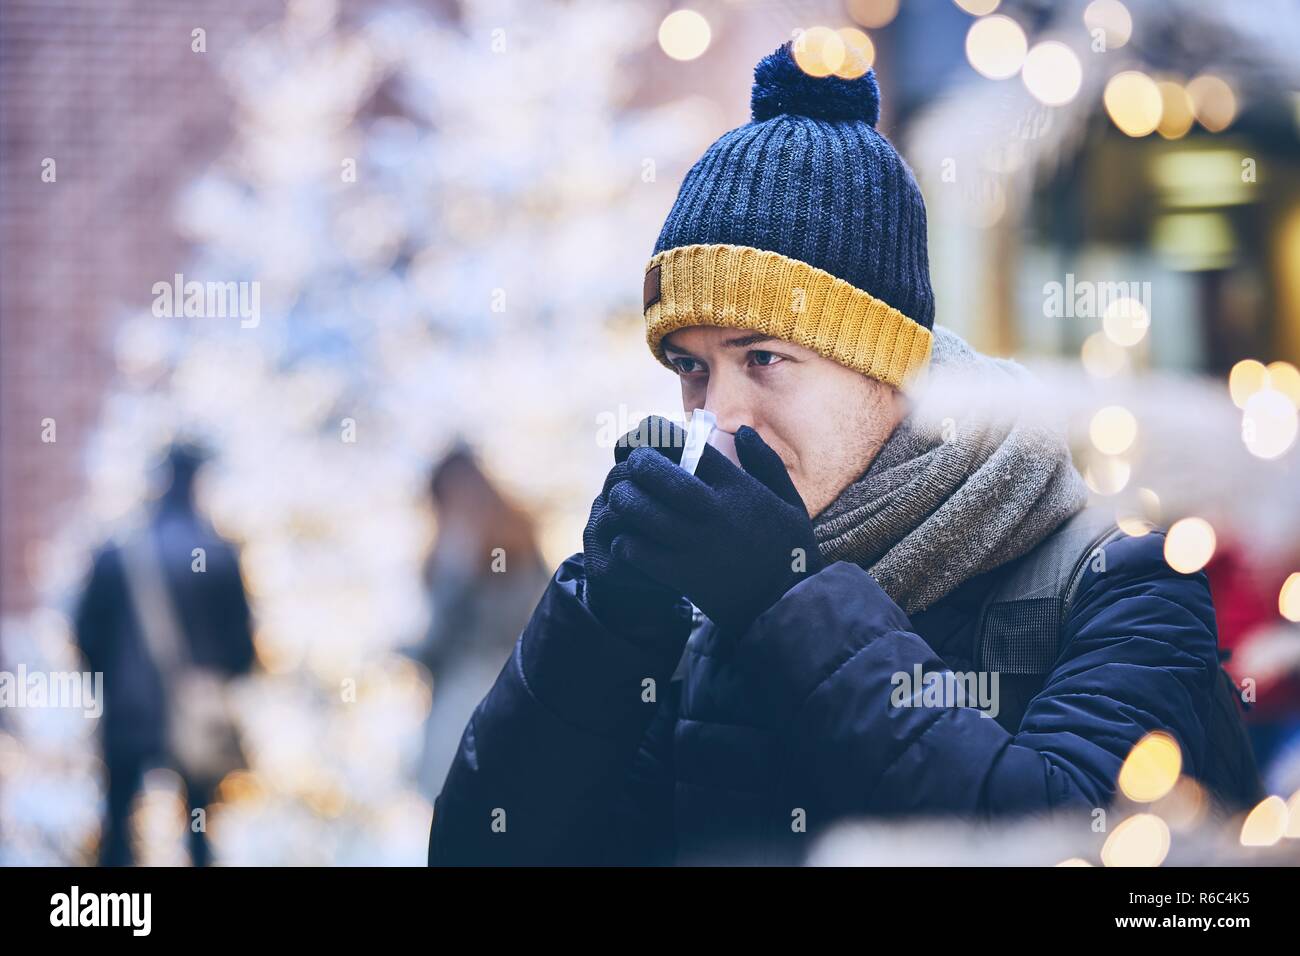 Junger Mann trinken Glühwein. gegen Beleuchtete Weihnachtsbäume. München, Deutschland. Stockfoto